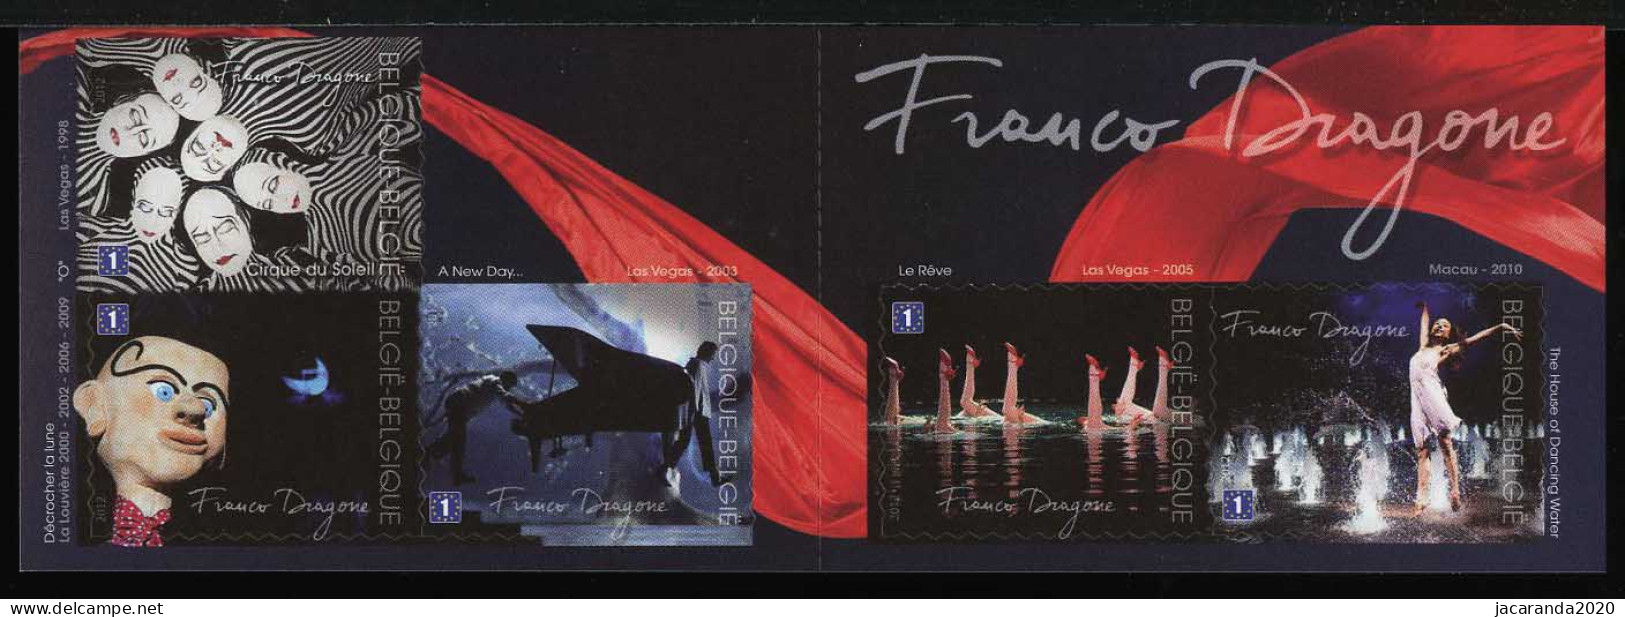 België B127 - Franco Dragone - Cirque Du Soleil - 1E - Zelfklevend - Autocollants - 2012 - 1997-… Permanent Validity [B]